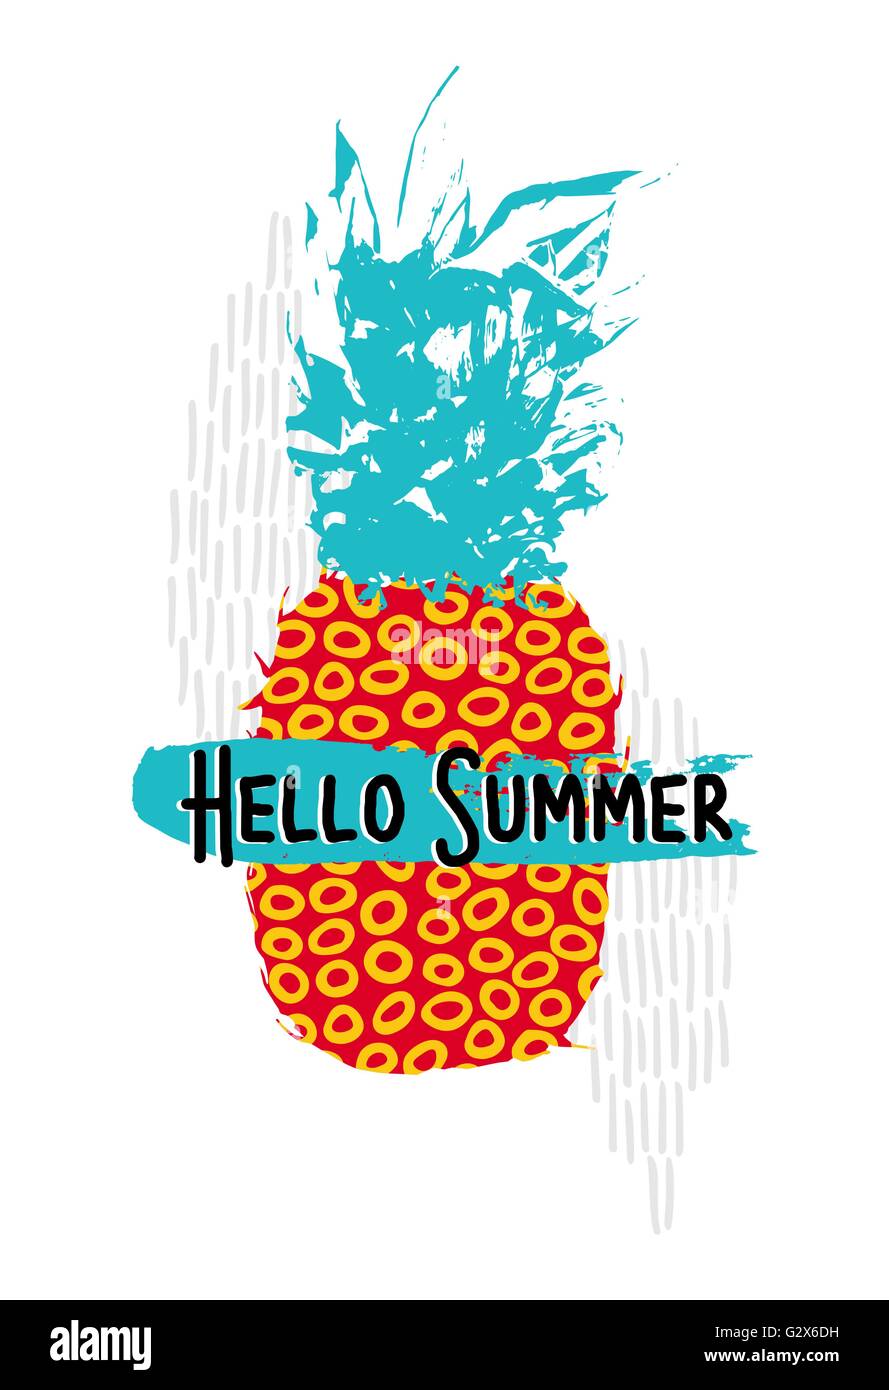 Hello summer retro 80s concept illustration d'ananas fruit avec vintage art colorés et éléments de style memphis des formes. Illustration de Vecteur